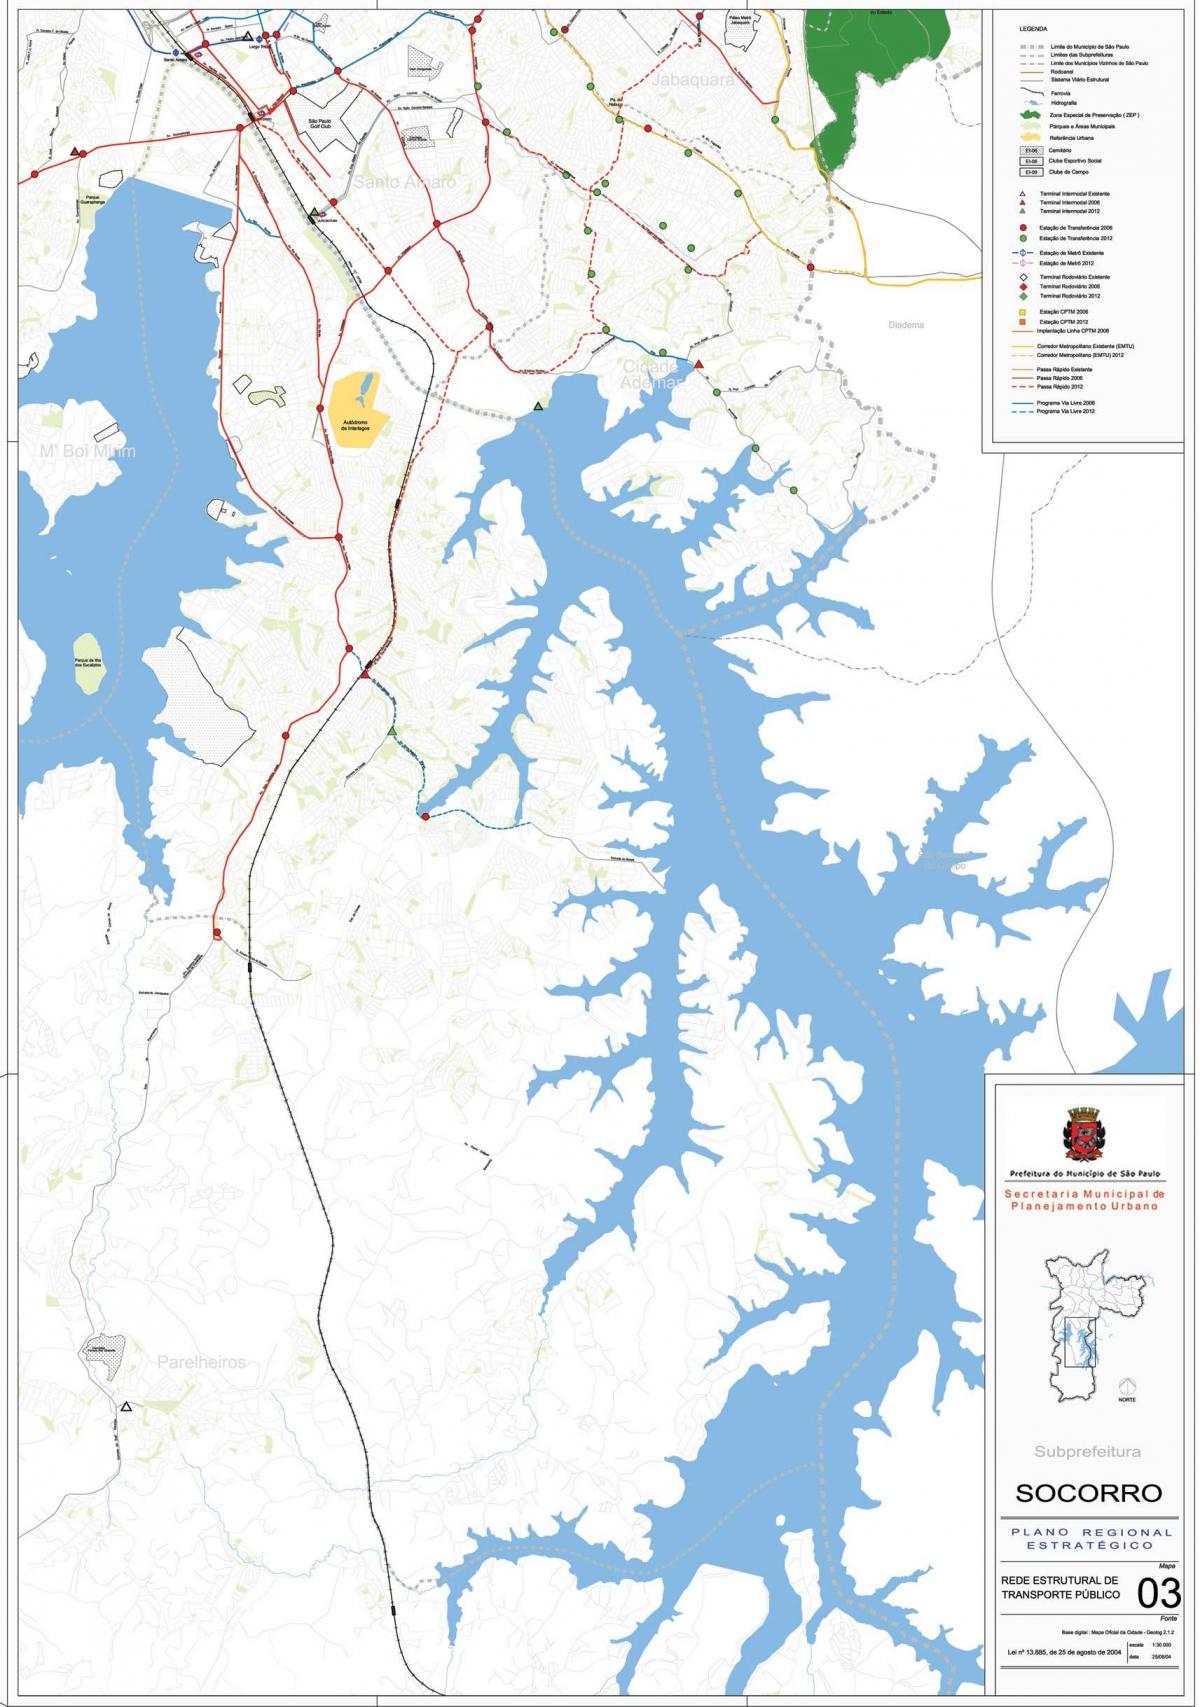 מפה של Capela לעשות סוקורו סאו פאולו - כבישים